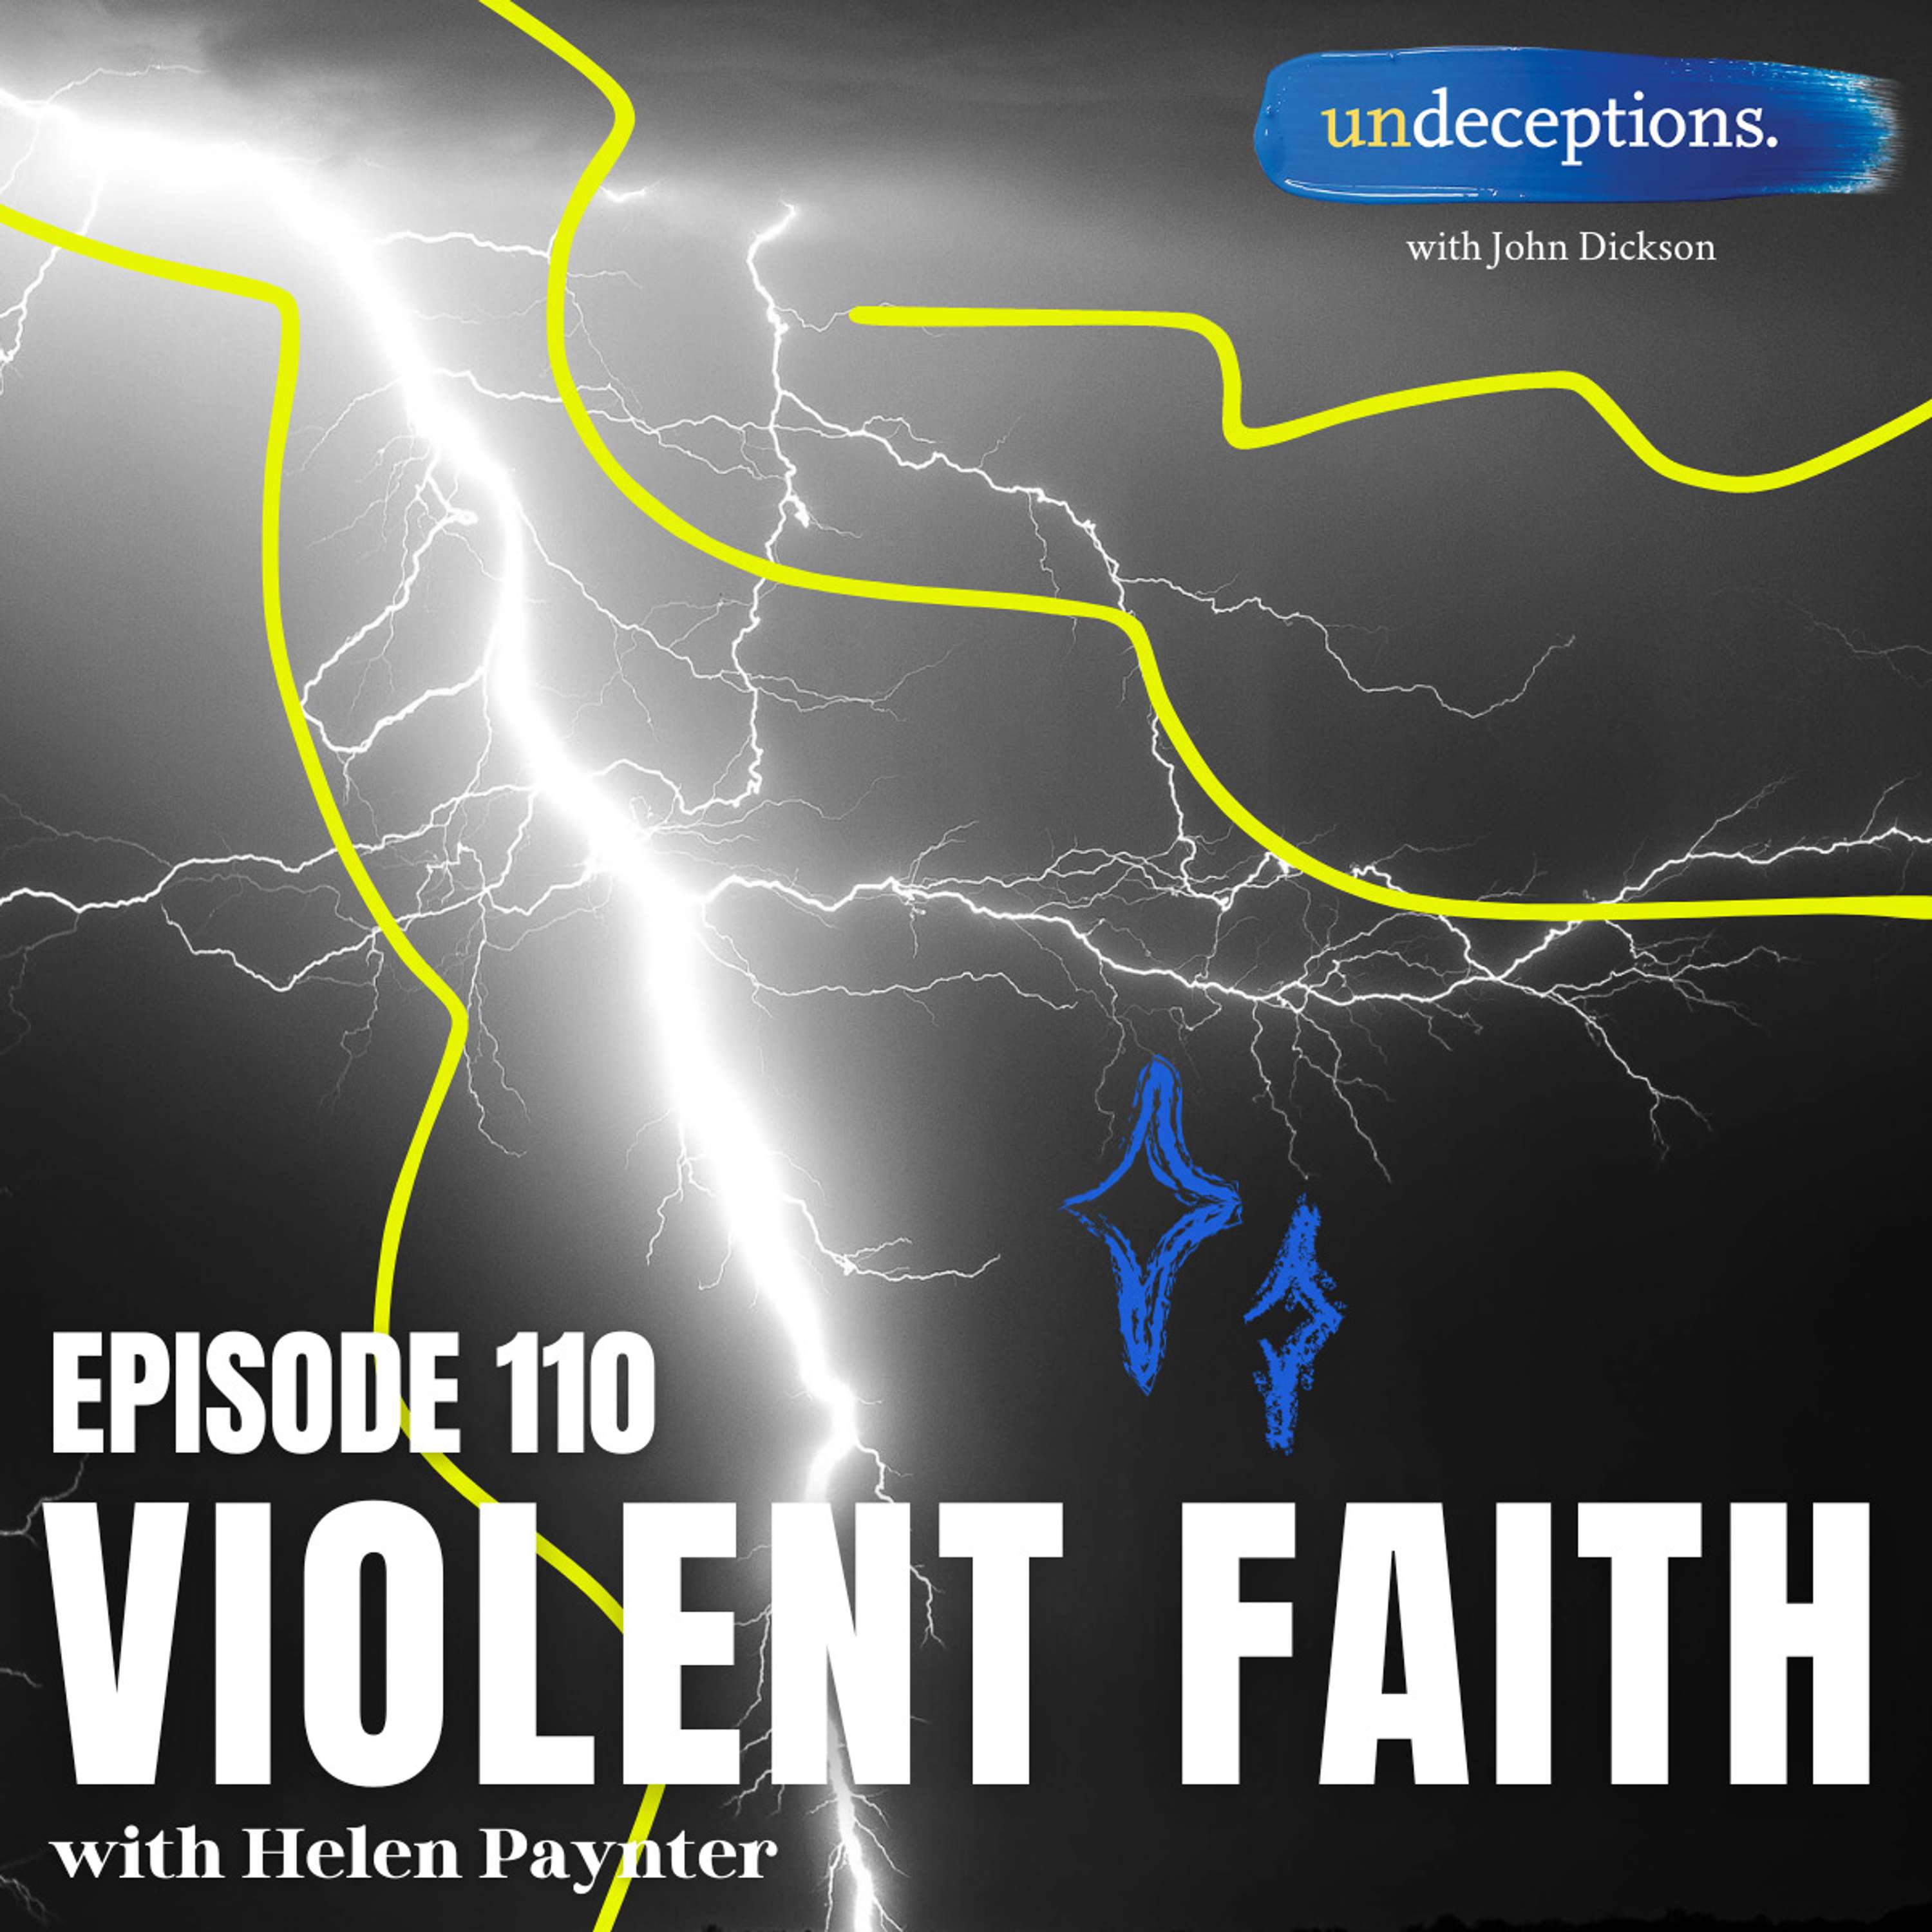 Violent Faith